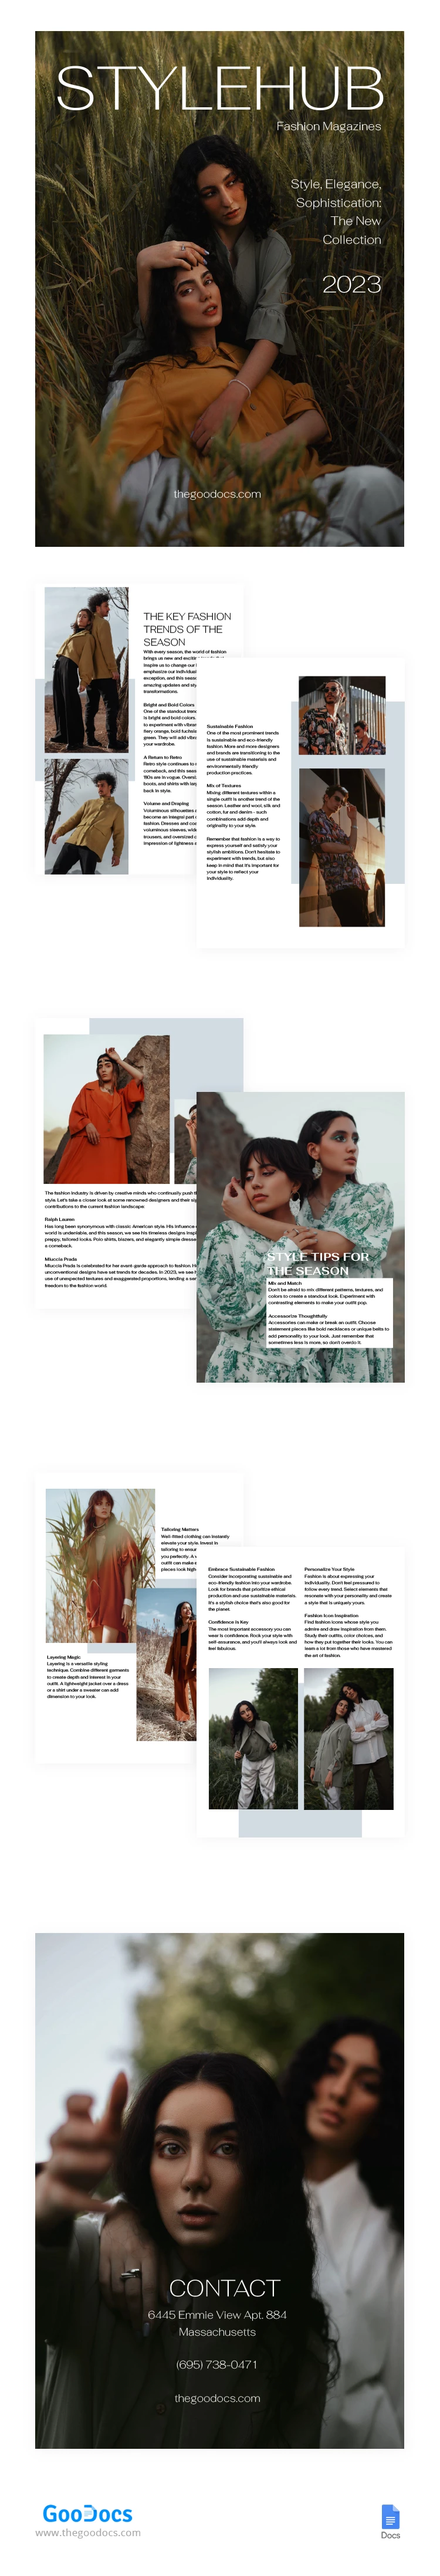 Revista de Moda Rústica e Retrô - free Google Docs Template - 10067261